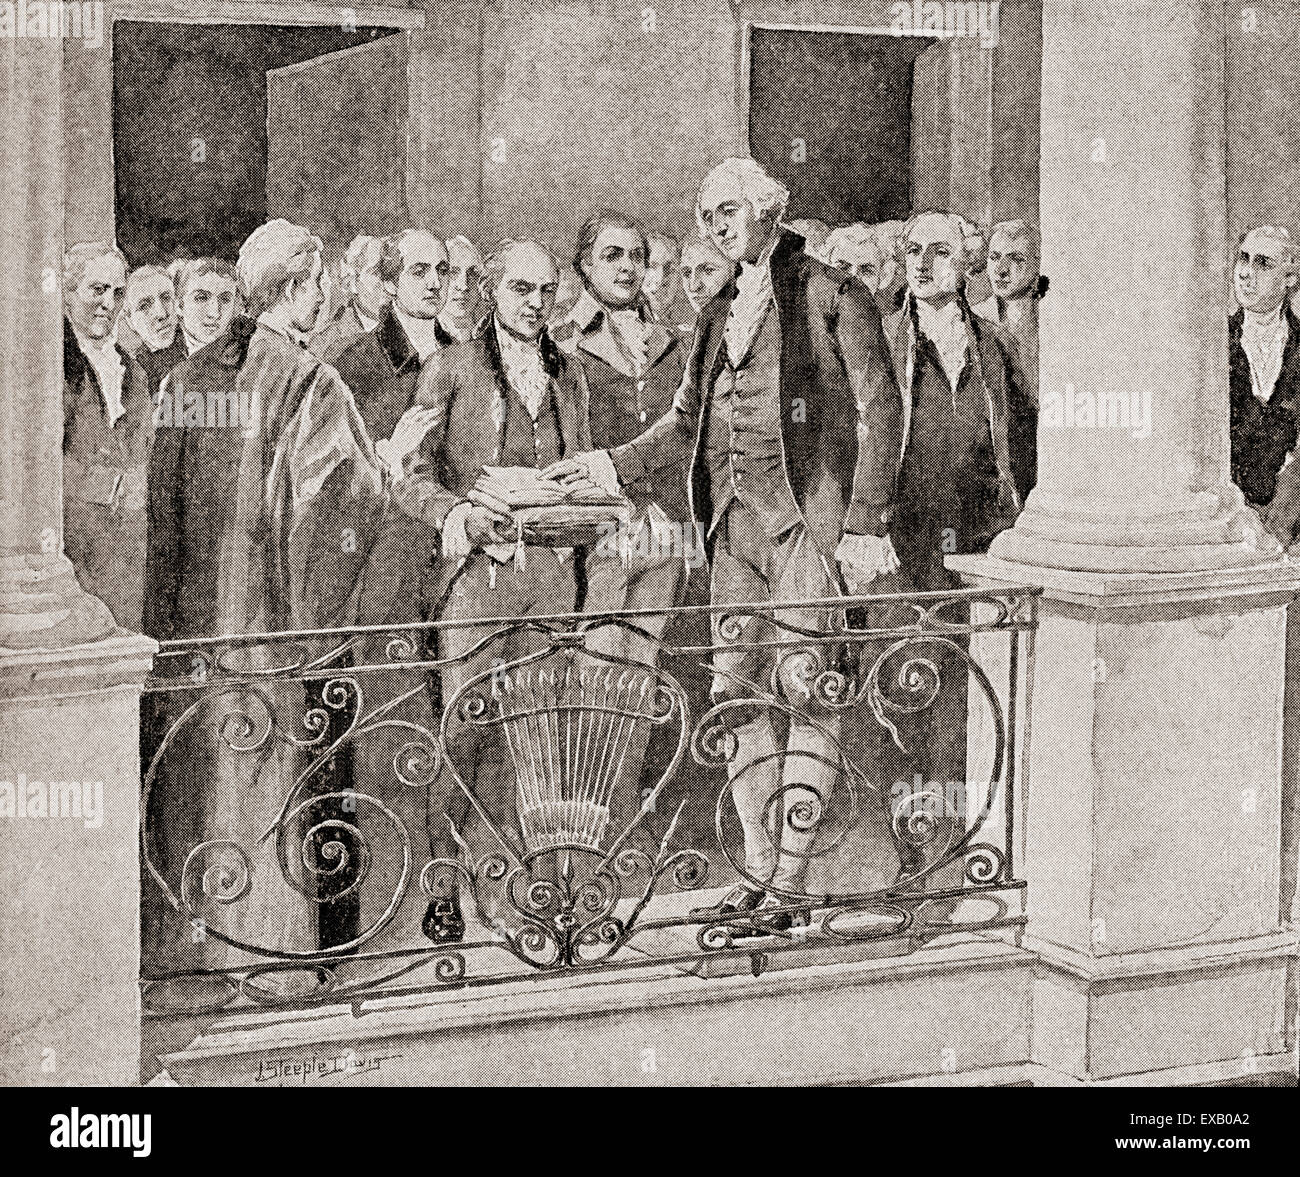 Inaugurazione di George Washington, 30 aprile 1789. George Washington, 1732 -1799. Primo presidente degli Stati Uniti (1789-1797), comandante in capo dell'esercito continentale durante la guerra rivoluzionaria americana, e uno dei Padri fondatori degli Stati Uniti. Foto Stock